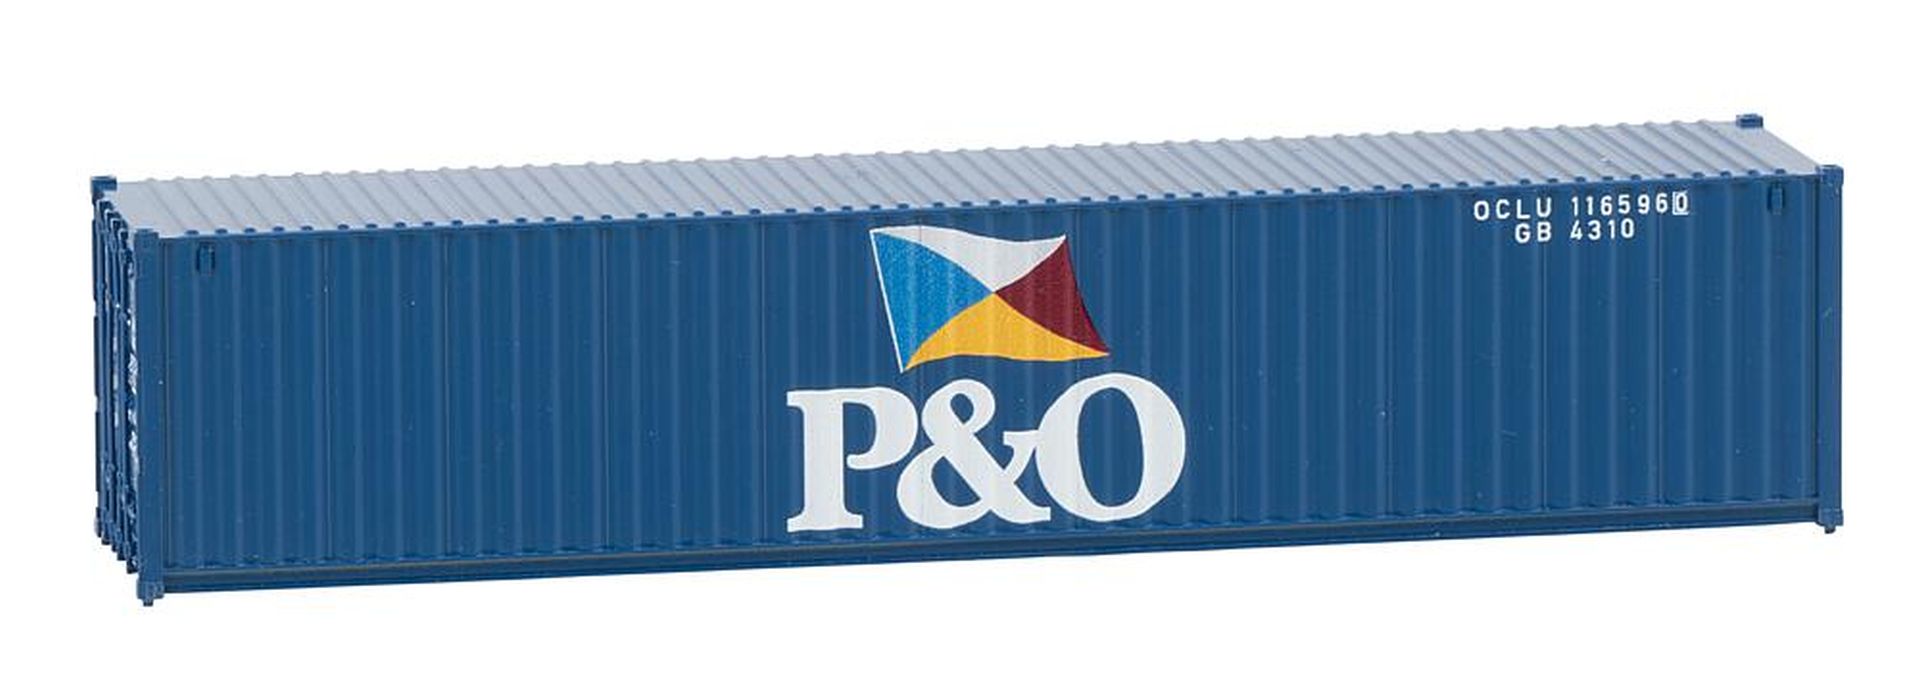 Faller 182104 - 40' Container P&O